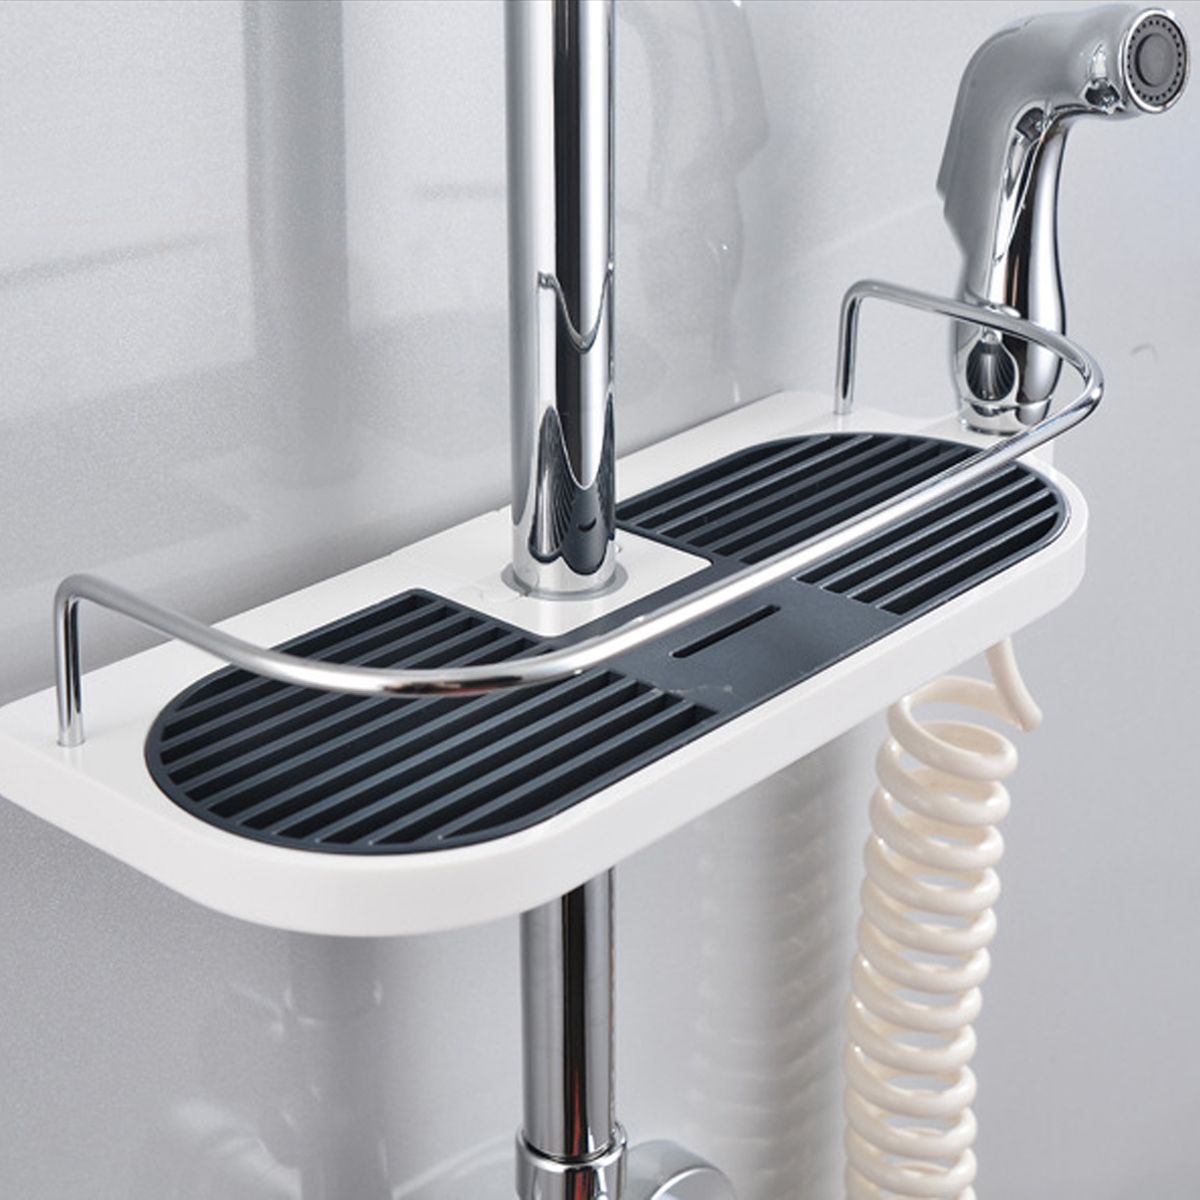 Bathroom-Pole-Shelf-Shower-Storage-Caddy-Rack-Organiser-Tray-Holder-Drain-Shelf-1165844